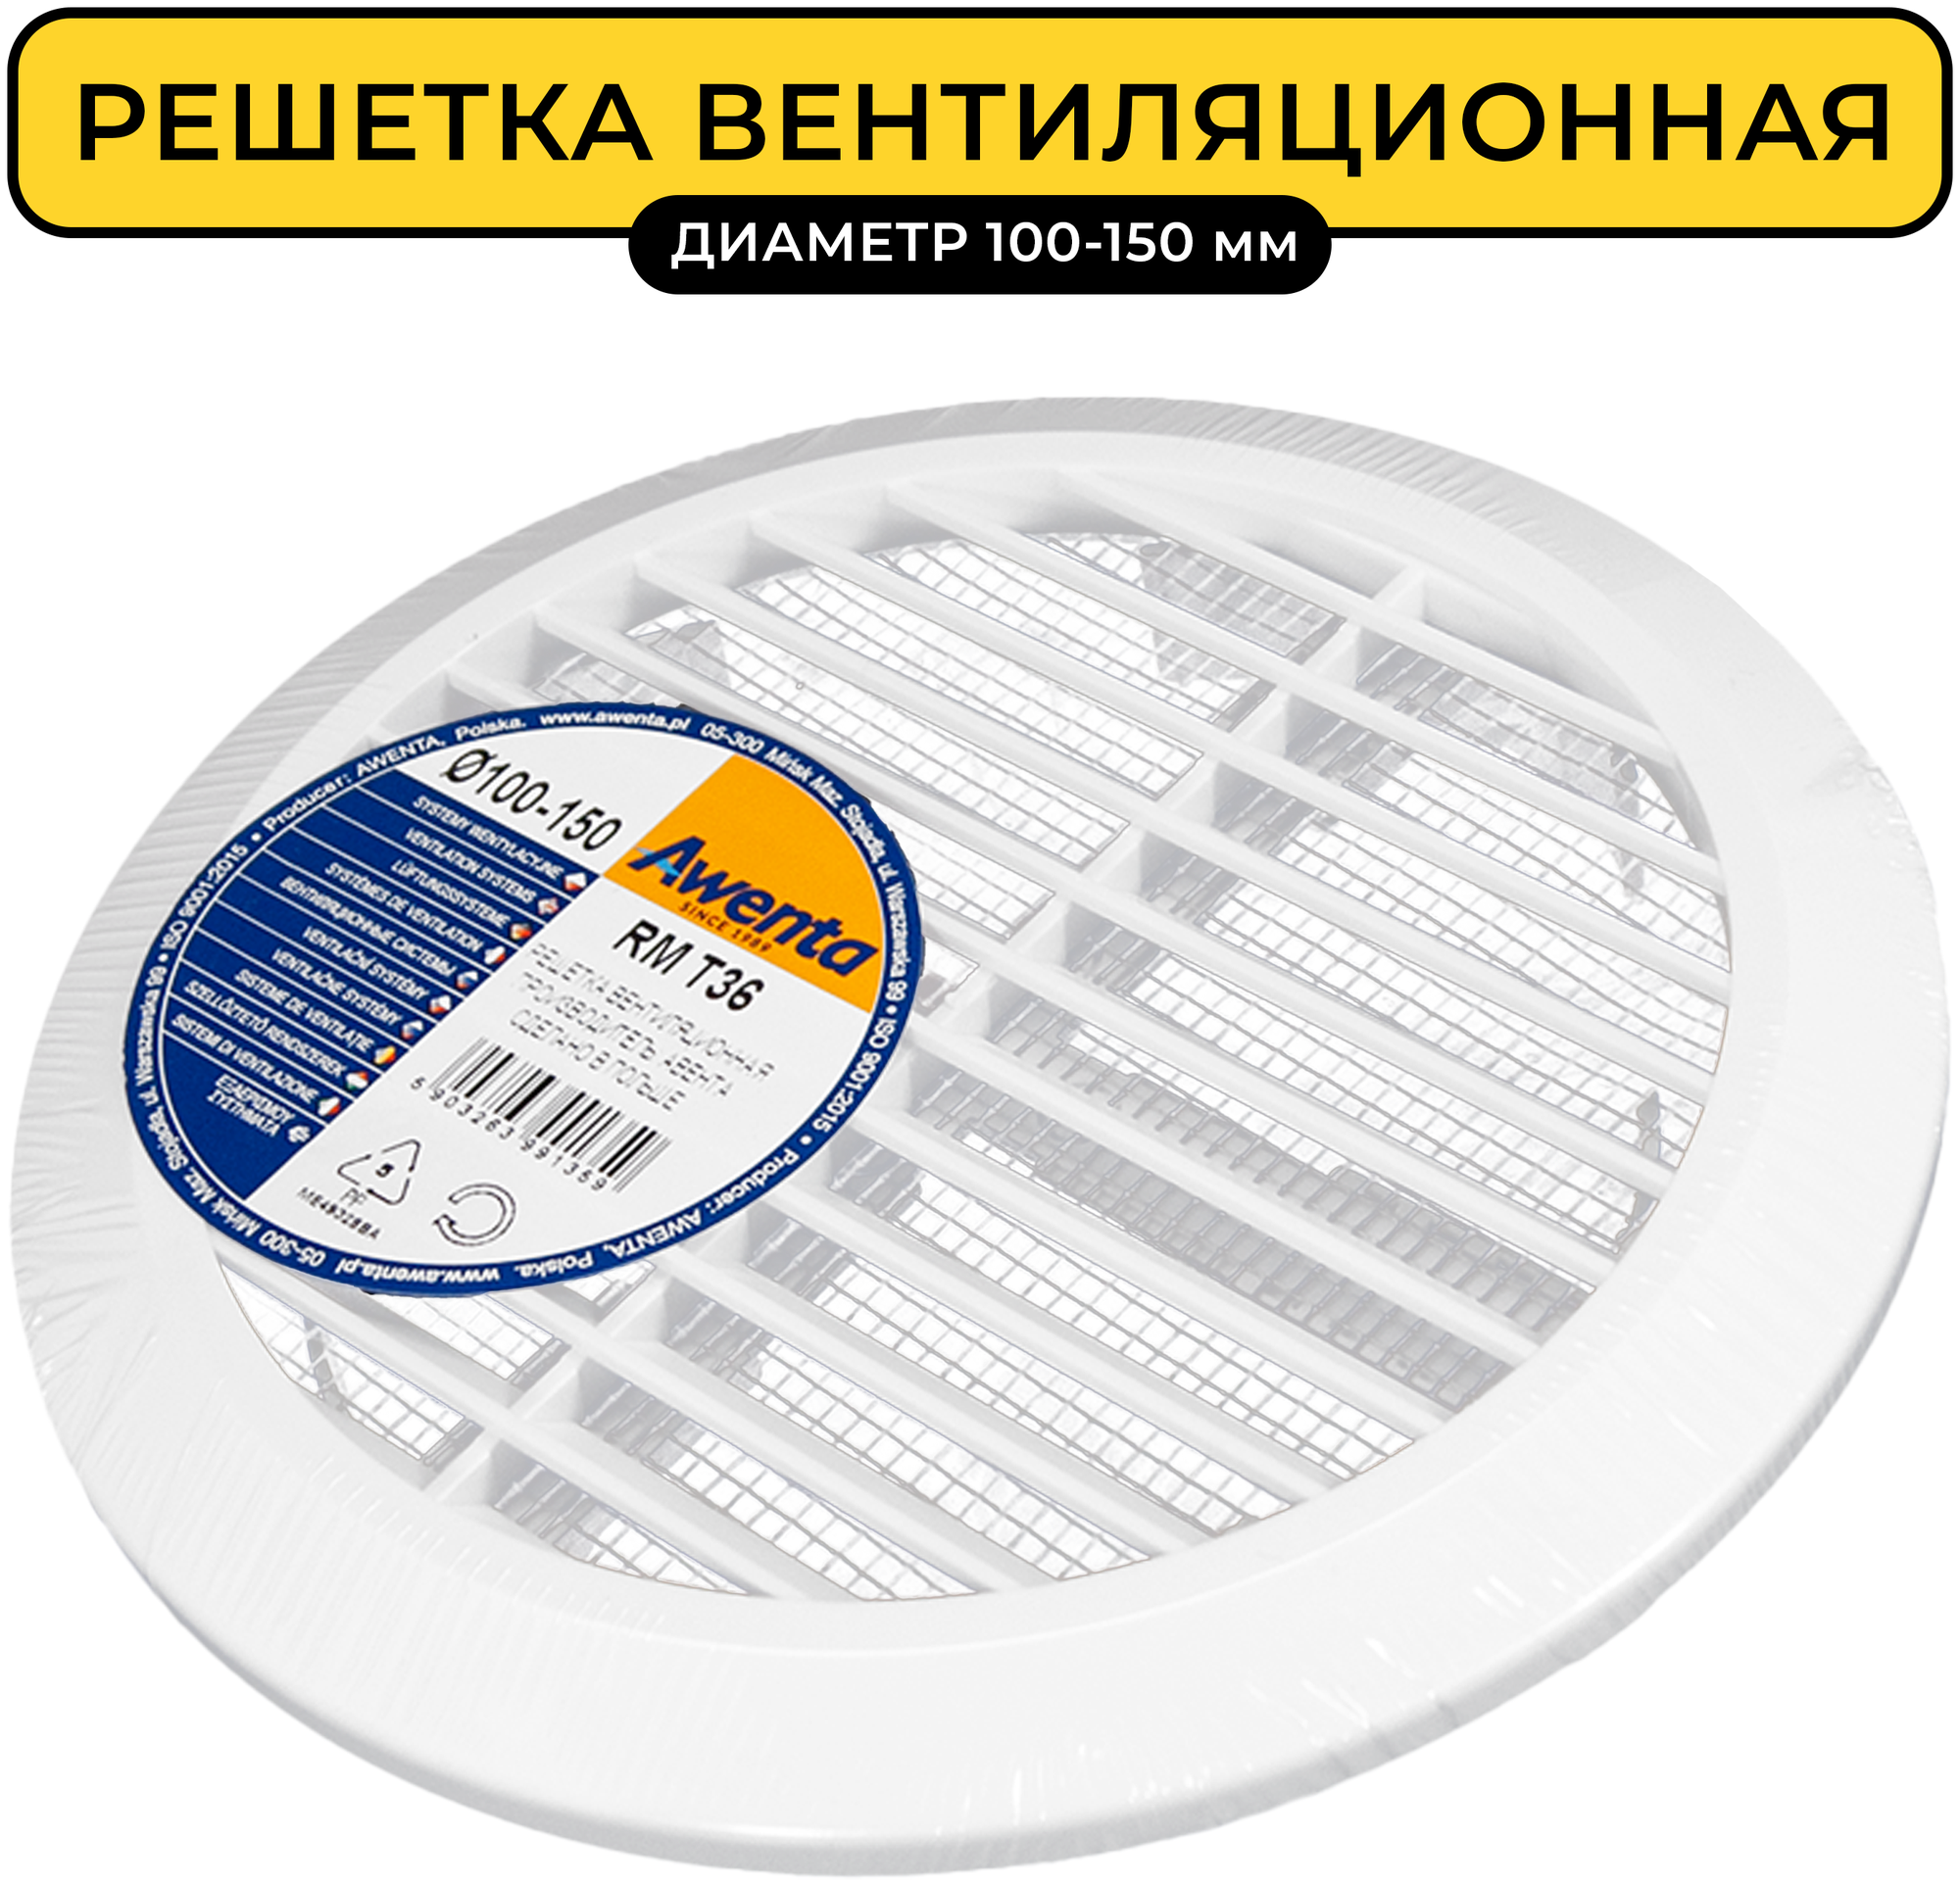 Решетка вентиляционная Awenta RM T36 диаметр 100-150 мм универсальная с сеткой пластик белая